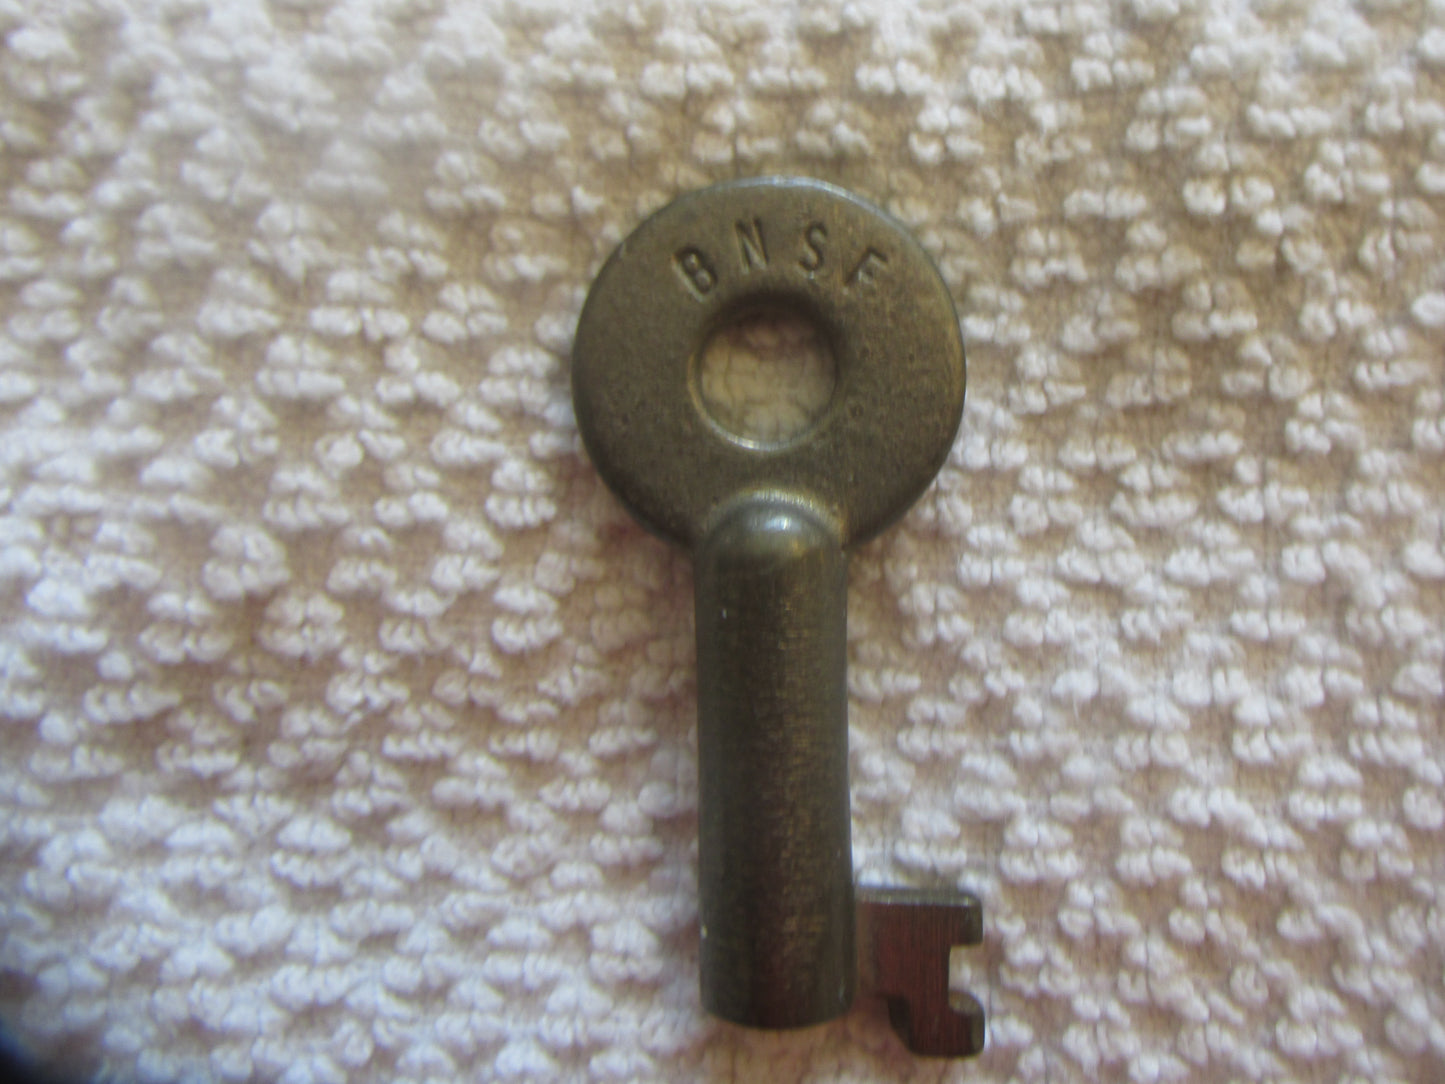 BNSF Key